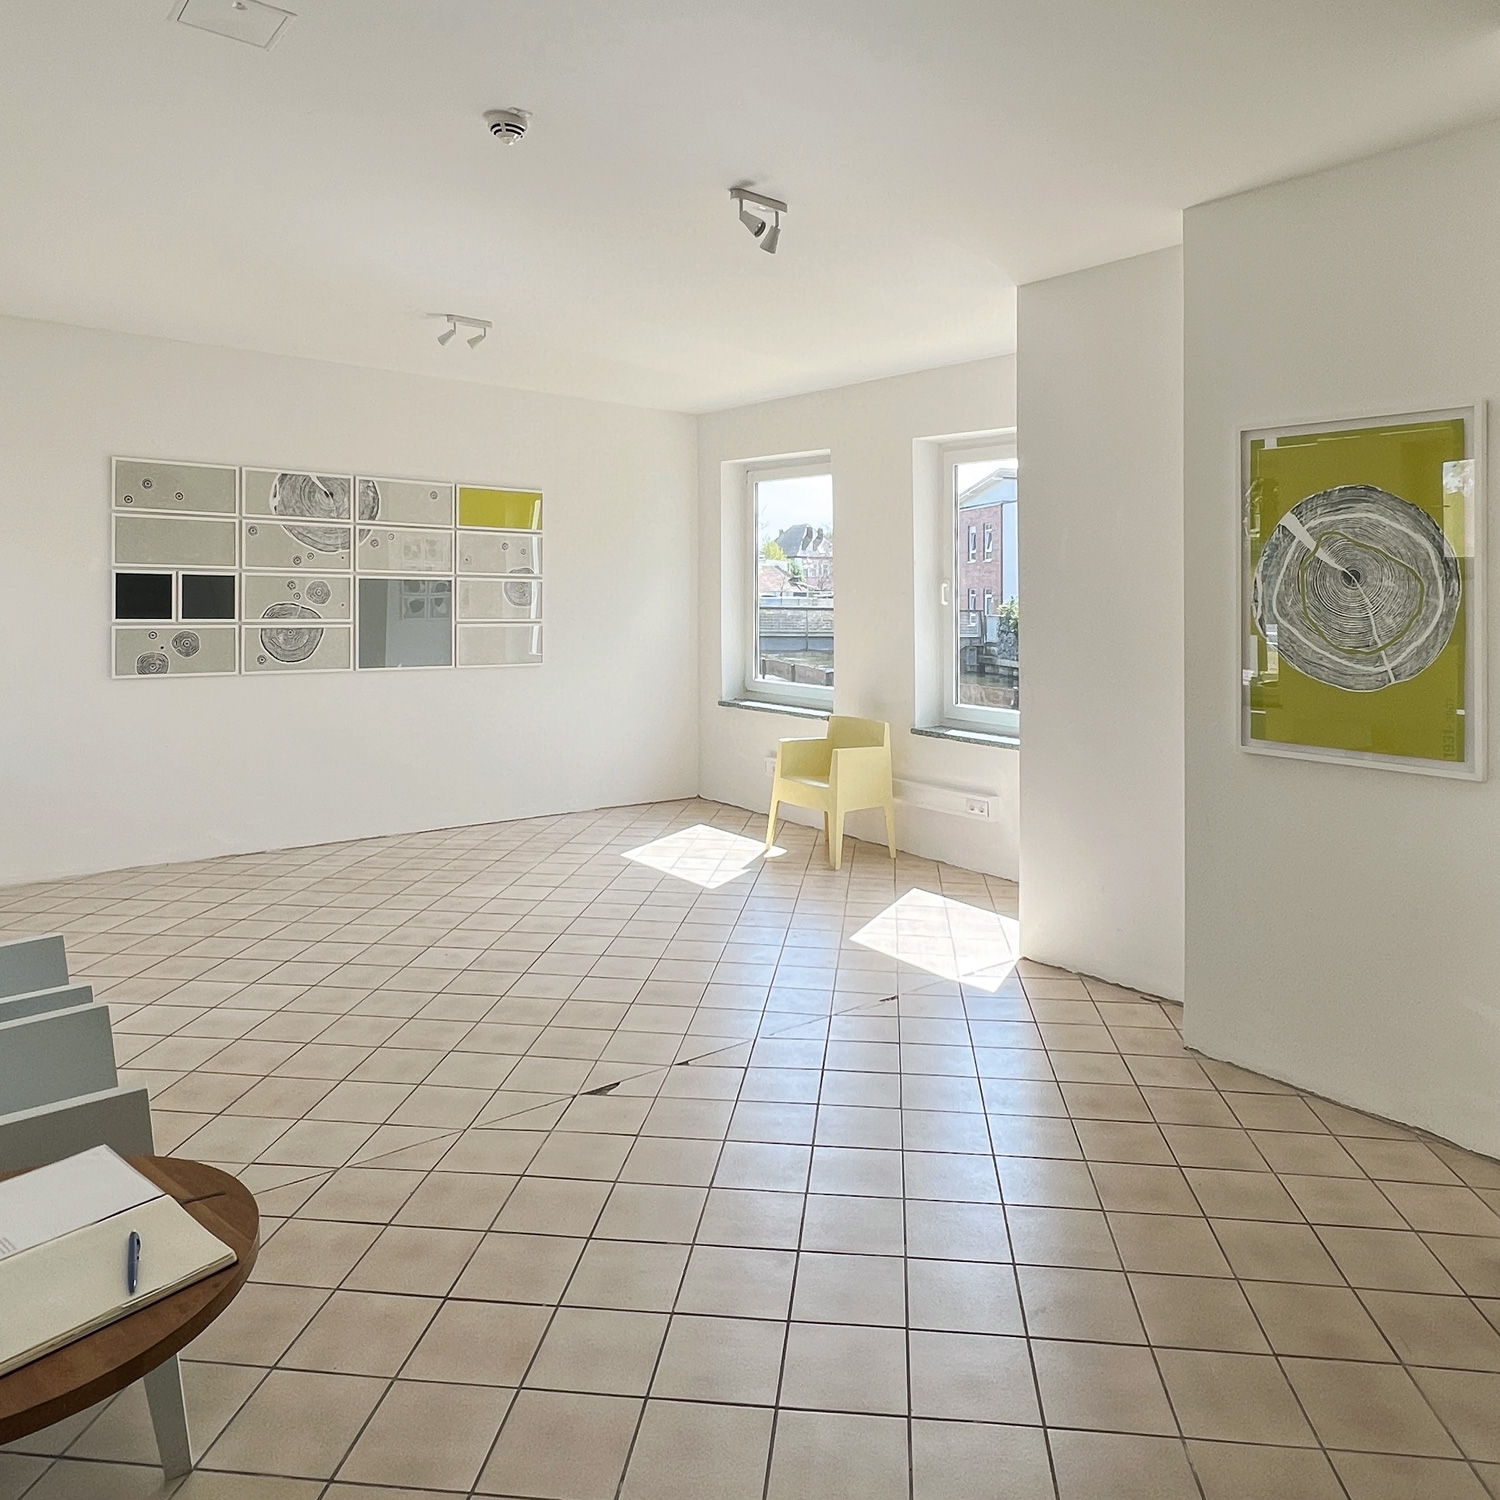 KREISE – WELBERGENER KREIS | Kunst- und Kulturkreis Berkelkraftwerk | Blick in die Ausstellung 1